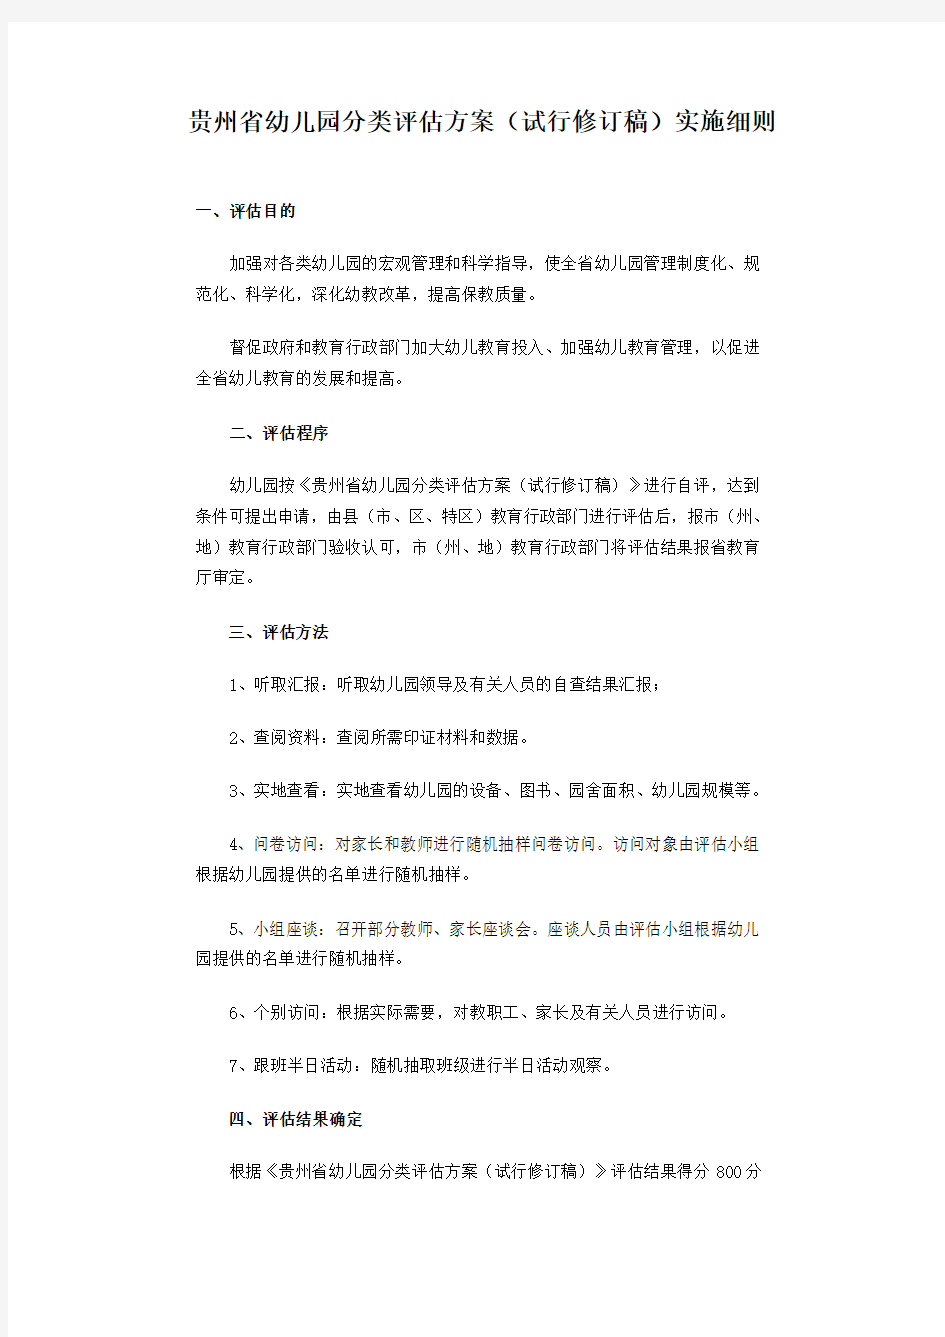 贵州省幼儿园分类评估方案实施细则